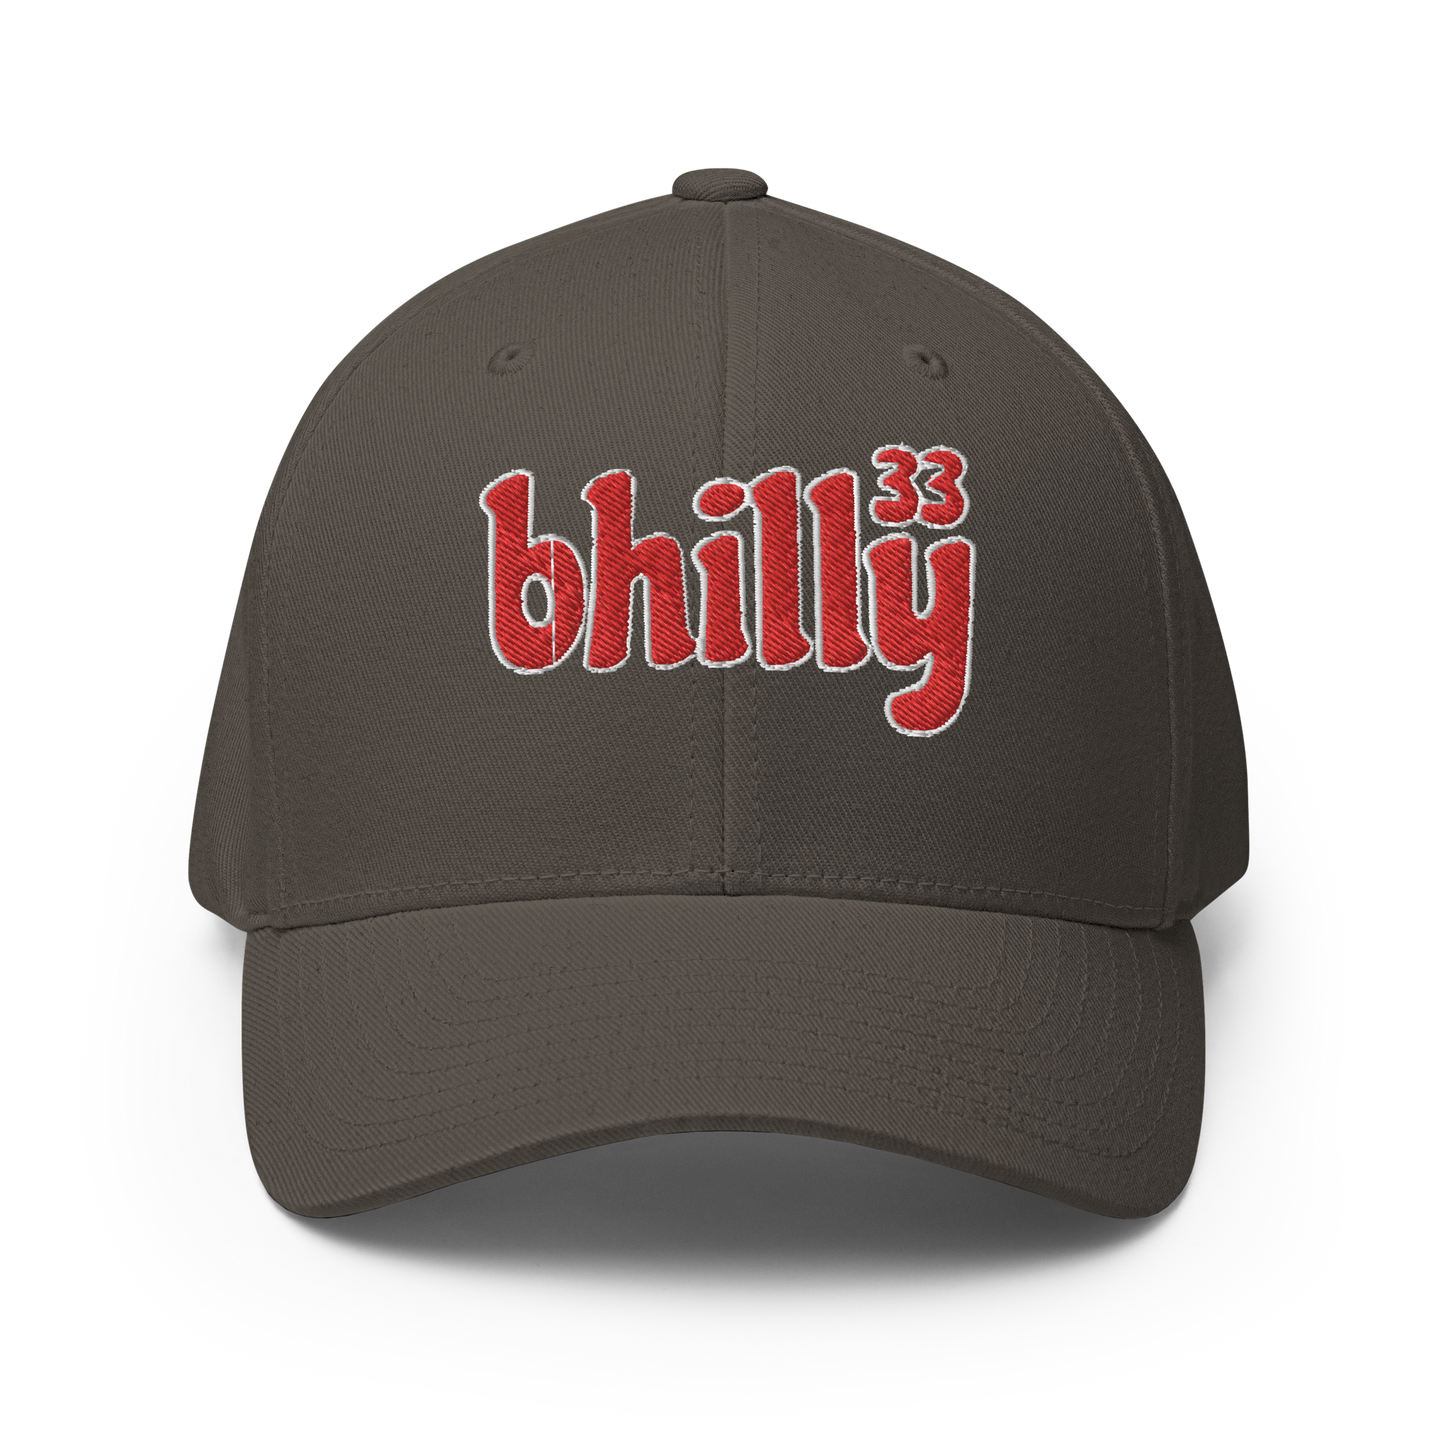 Bhilly 33 FlexFit Structured Twill Cap | BMFS 33 Inspired Cap